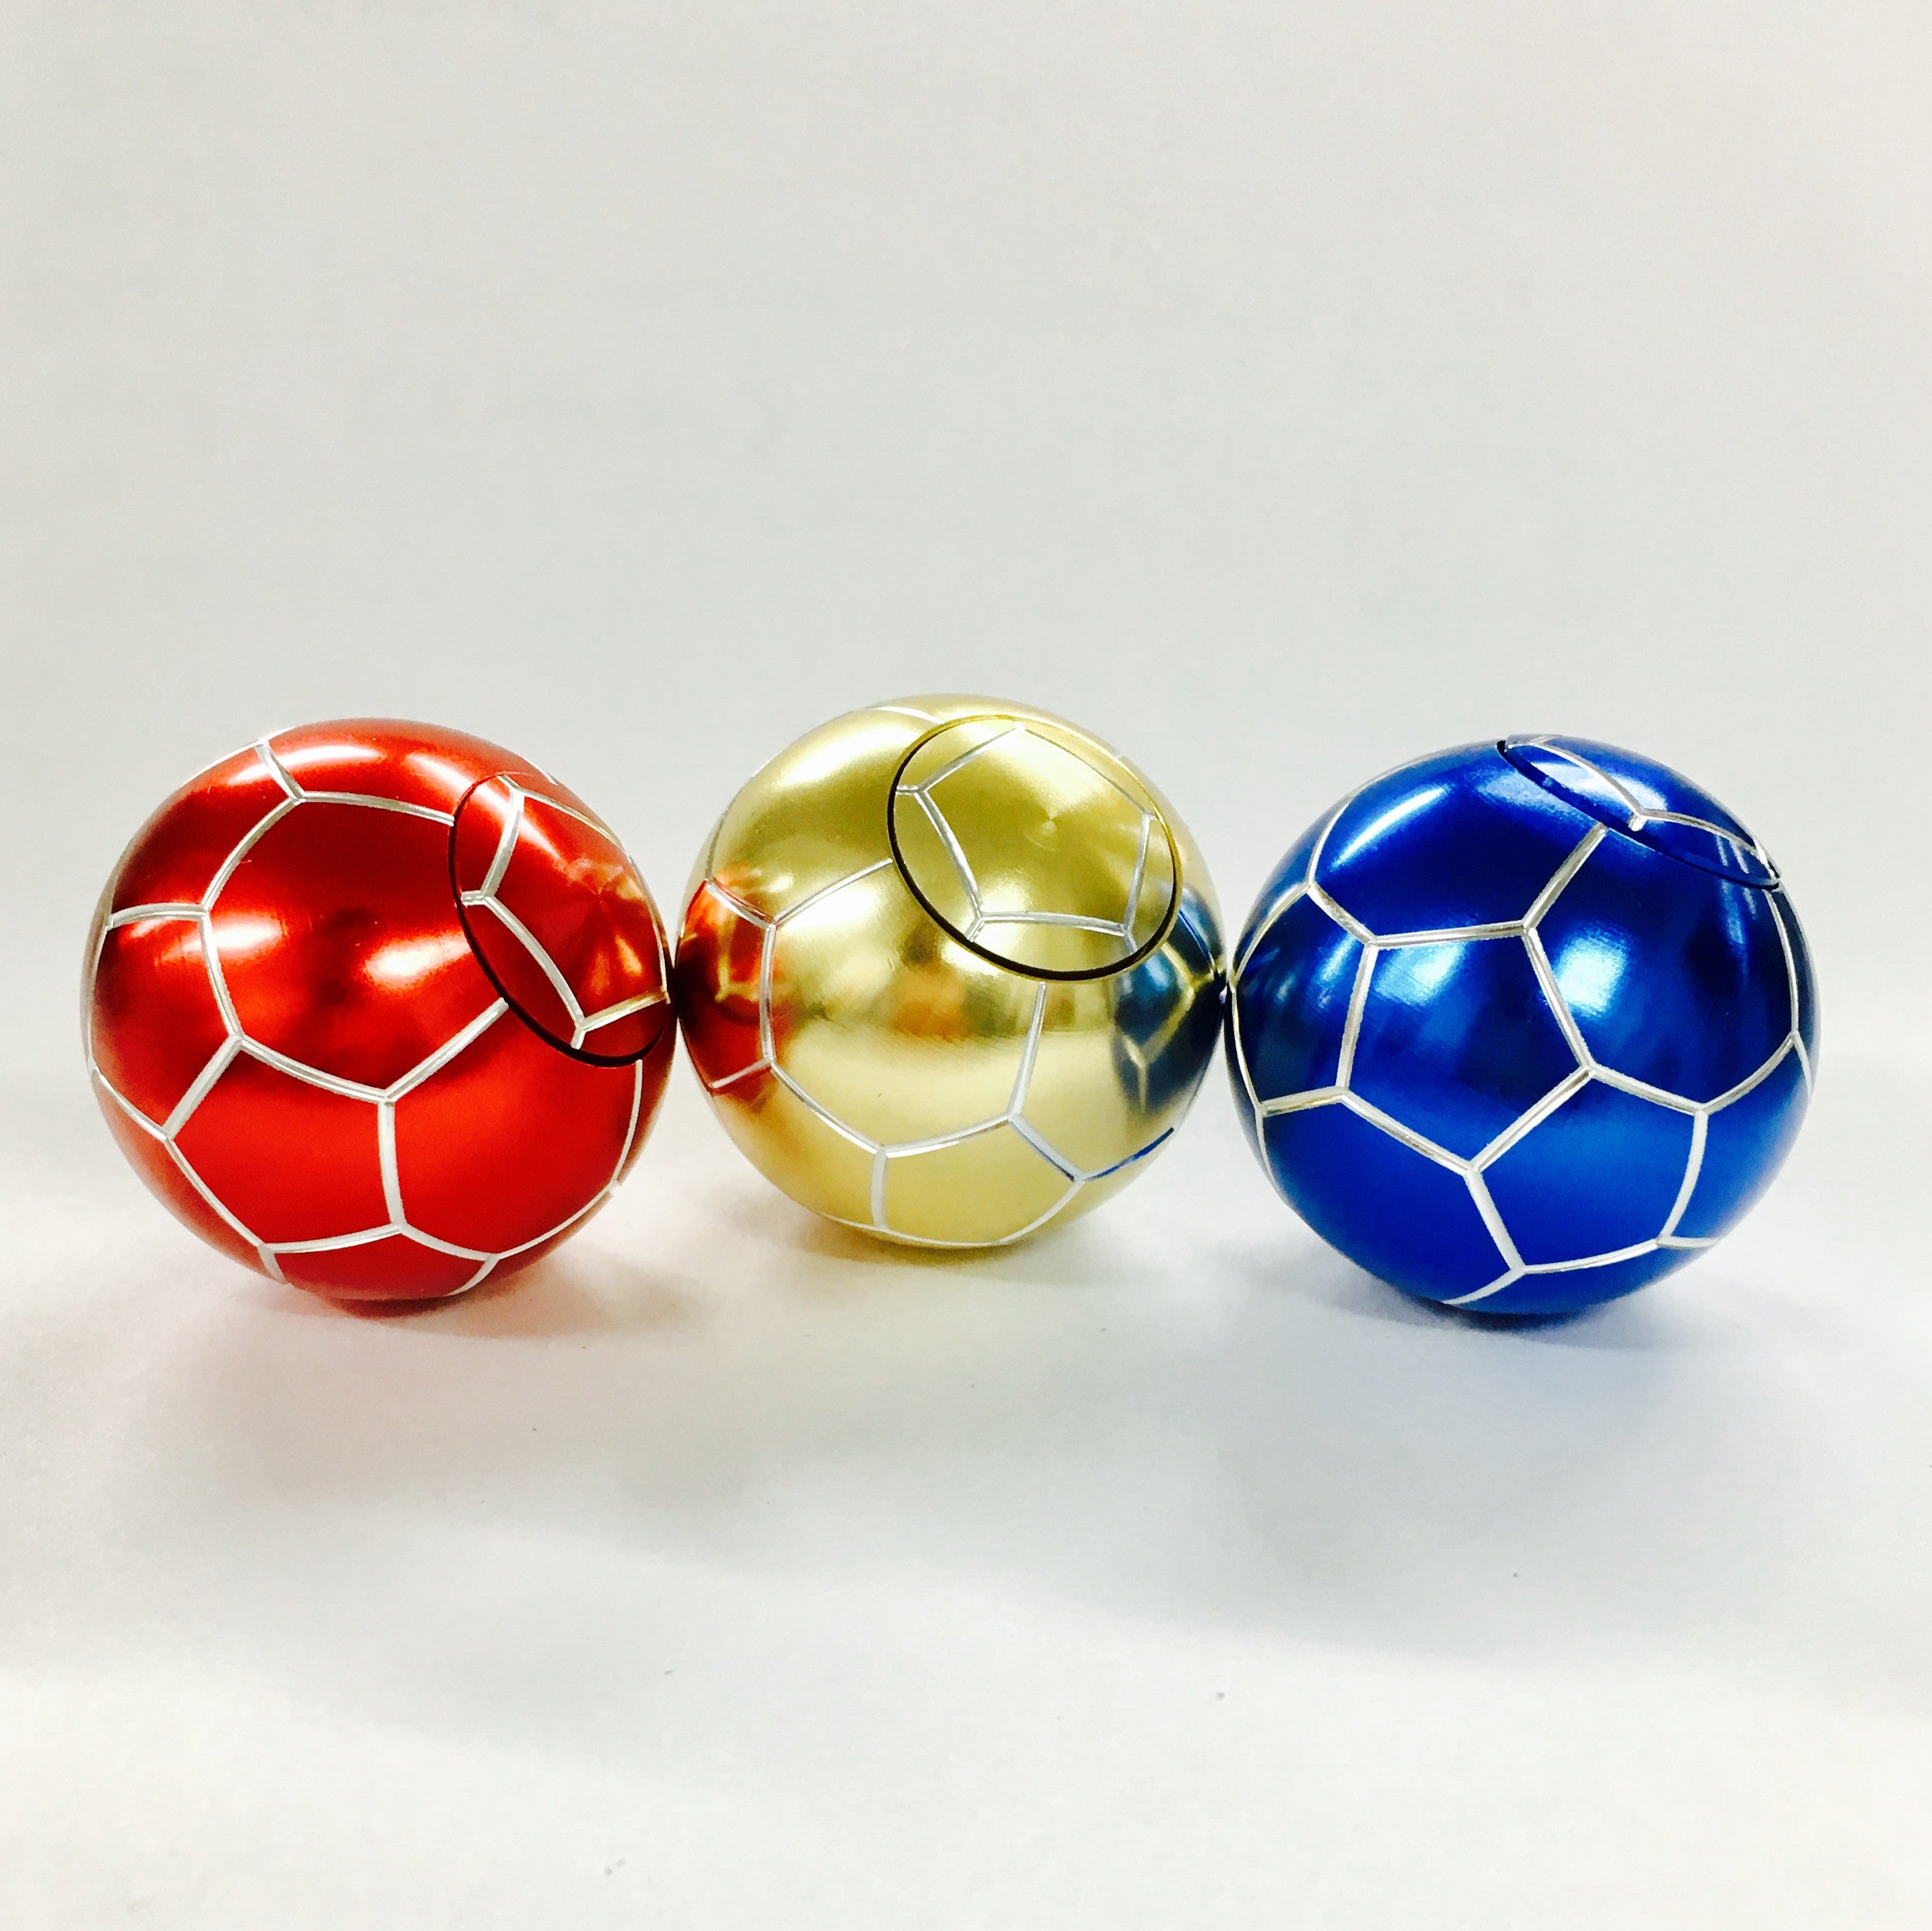 spinner balls